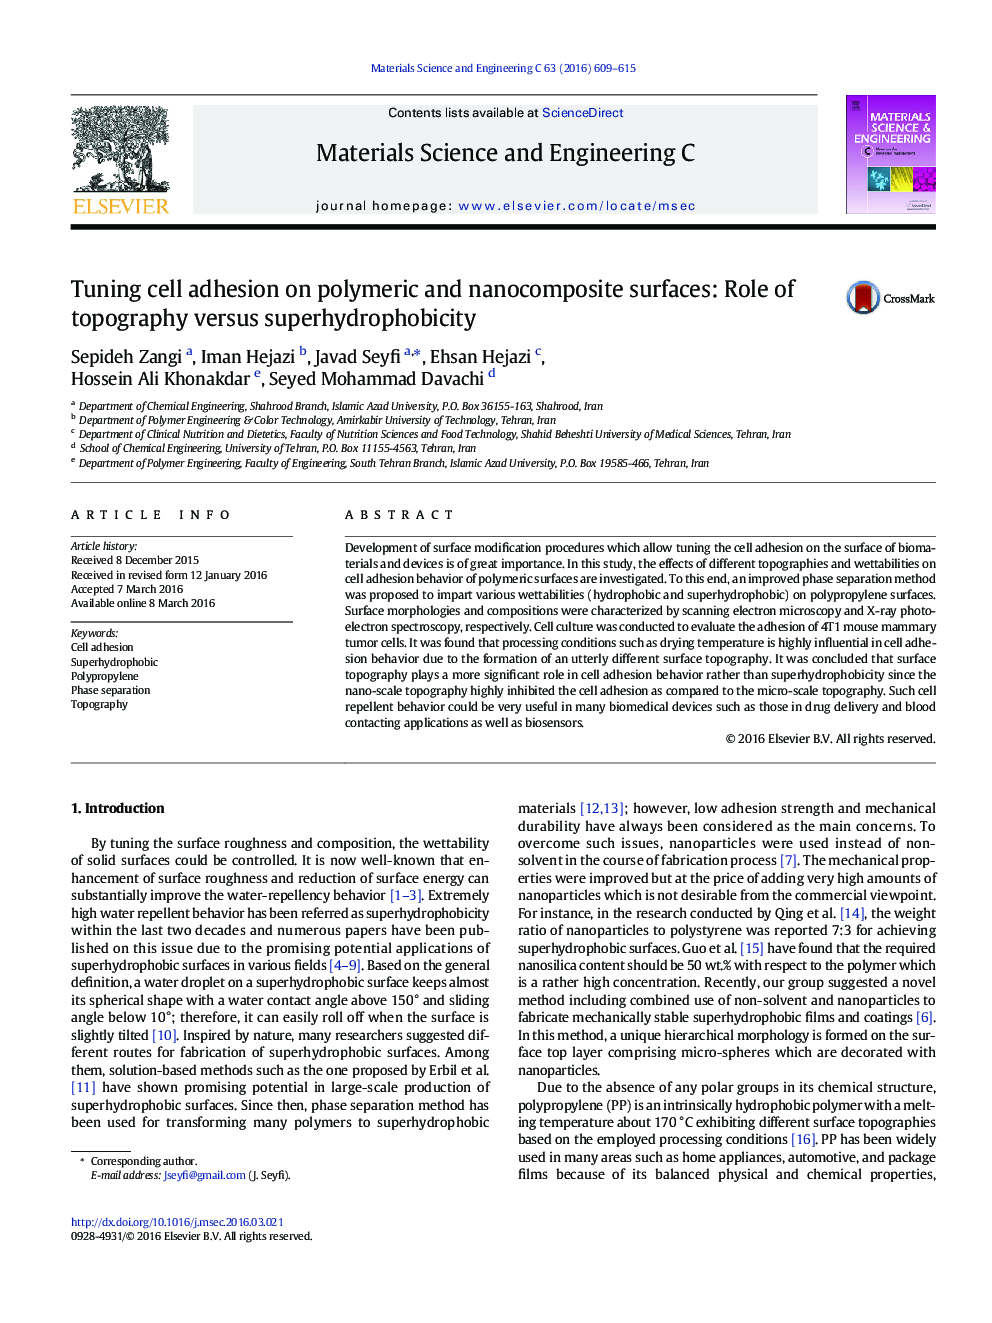 چسبندگی در سطوح پلیمری و نانو کامپوزیت: نقش توپوگرافی در مقابل سوپر هیدروفوباسیت 